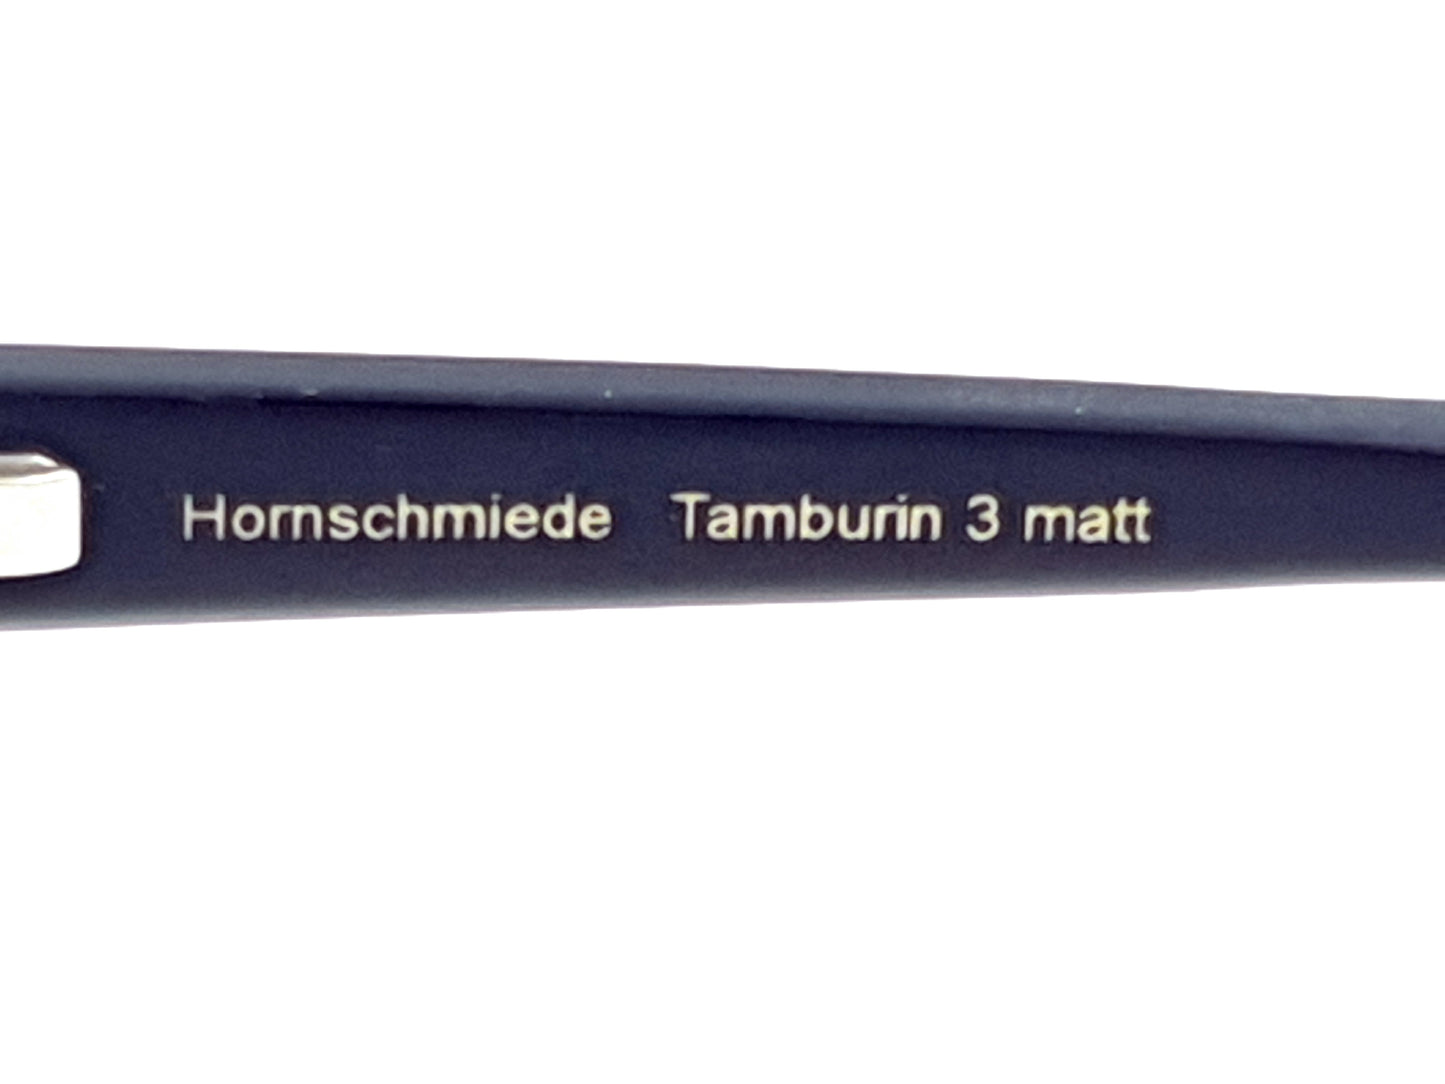 Hornschmiede Tamburin 3 matt